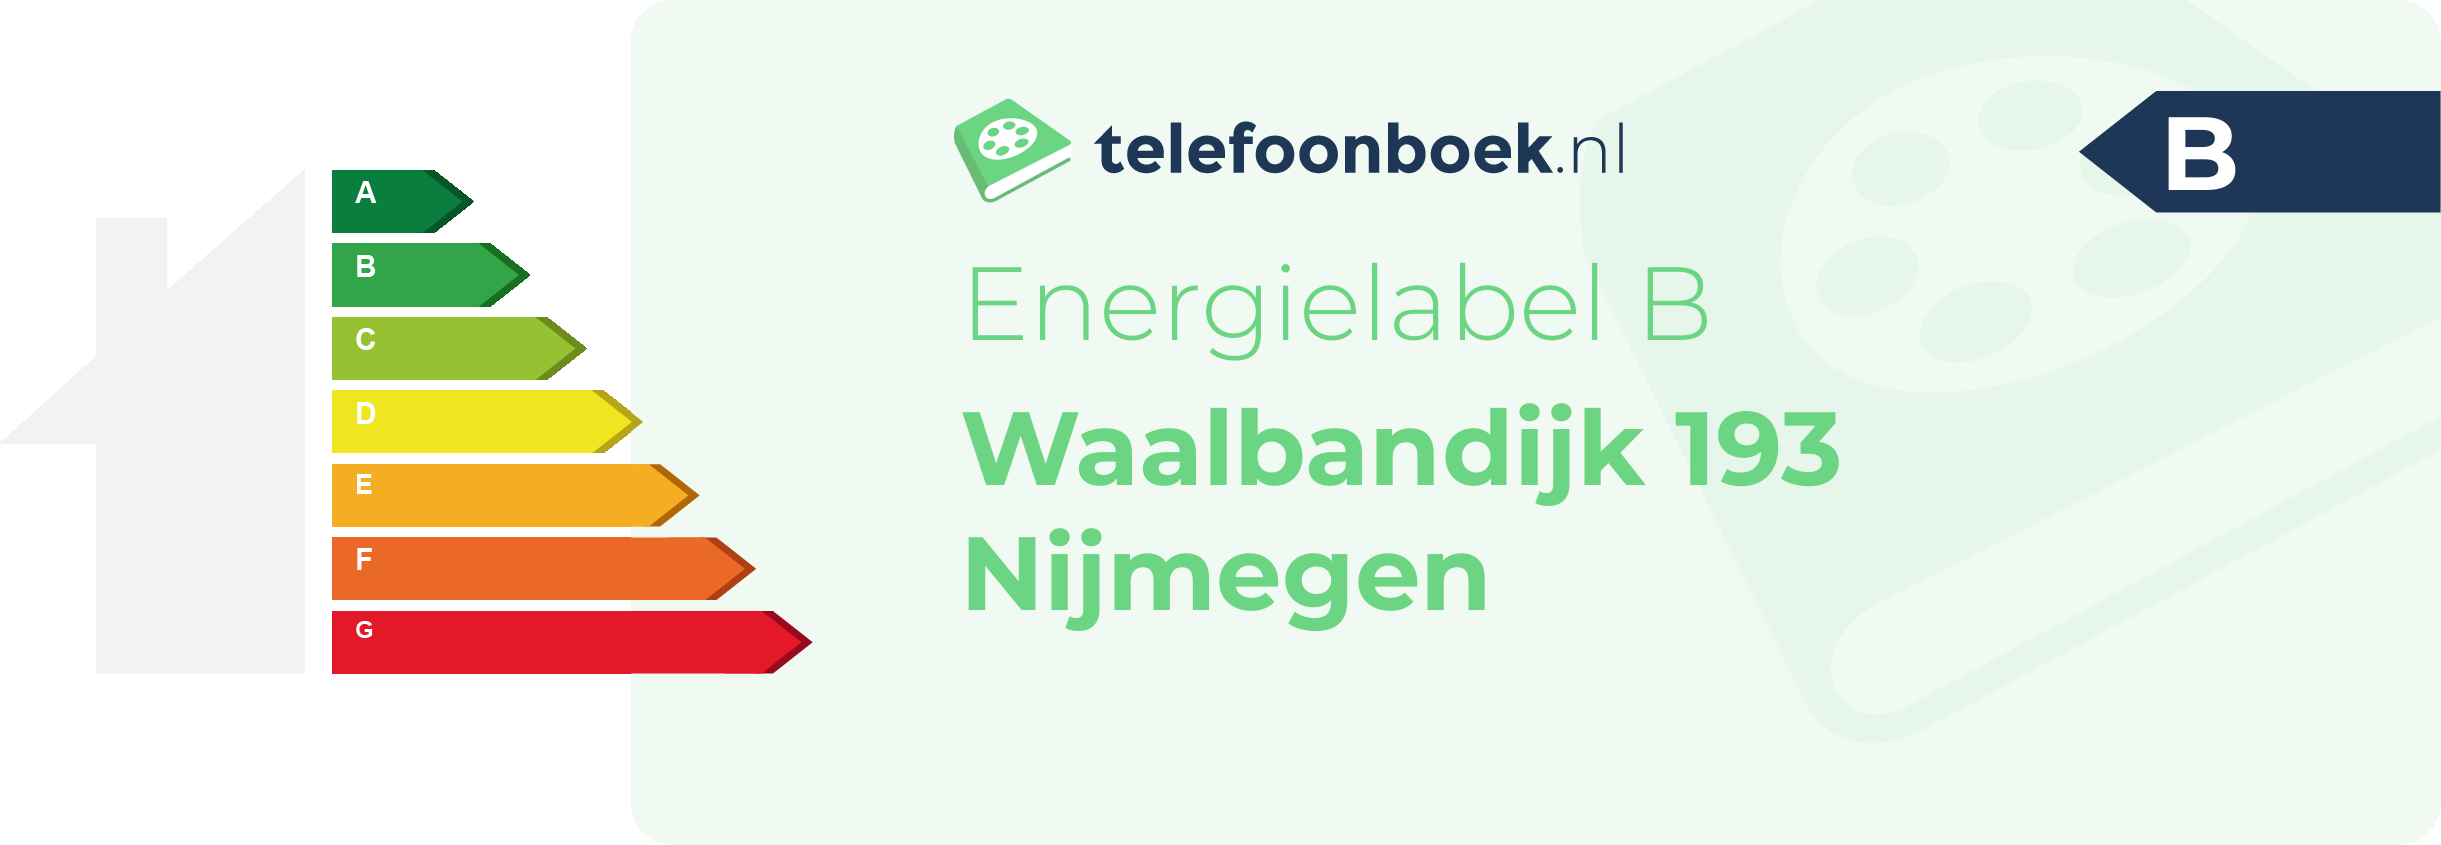 Energielabel Waalbandijk 193 Nijmegen